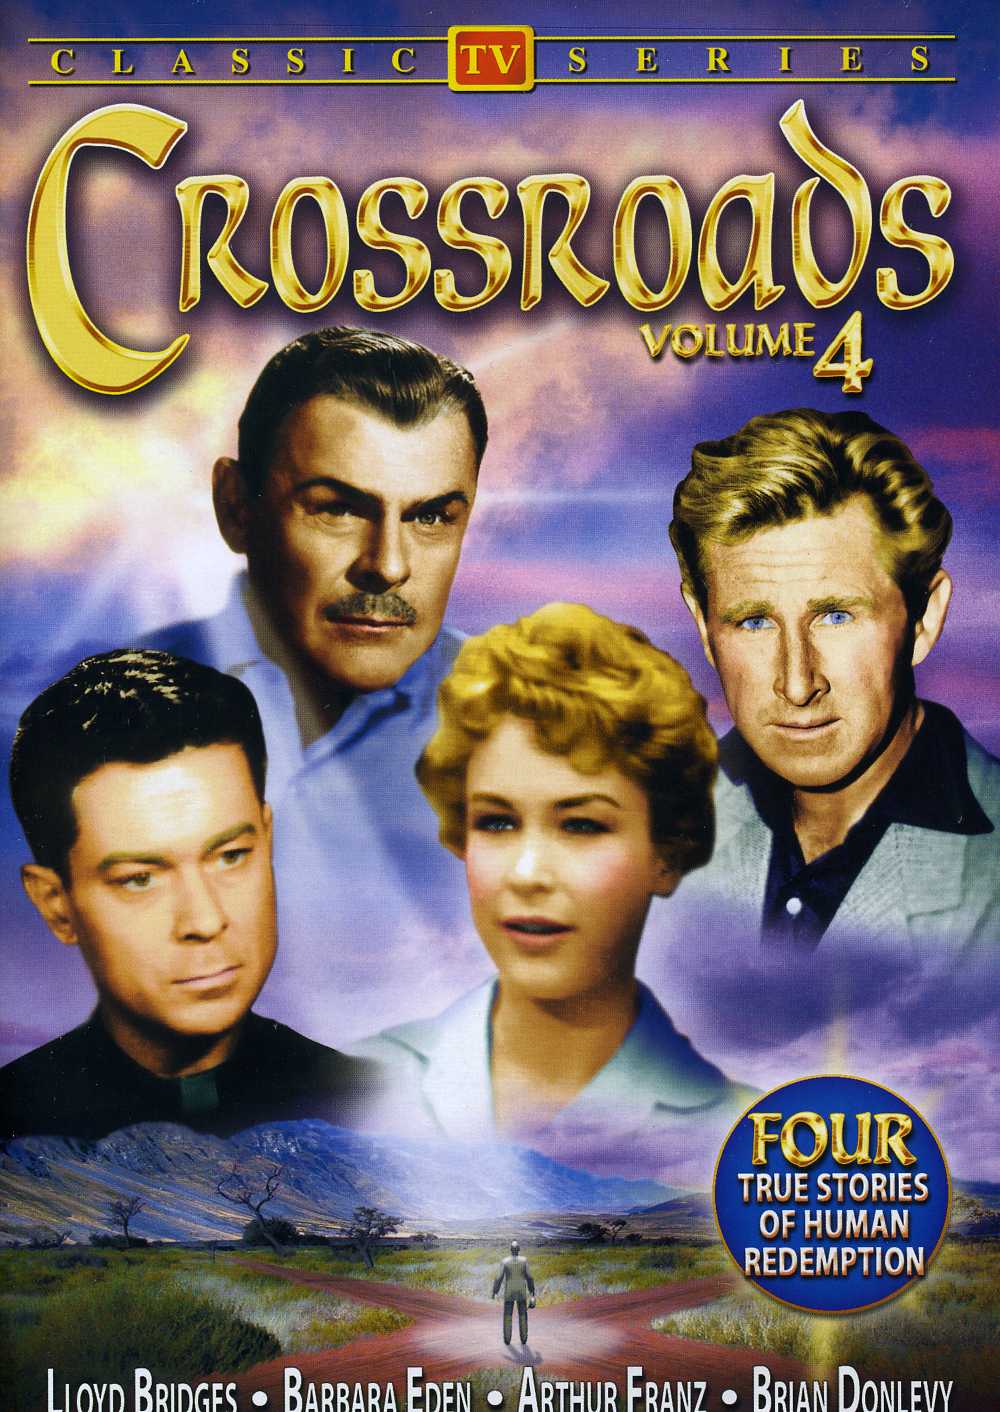 CROSS ROADS (1955) / (B&W)